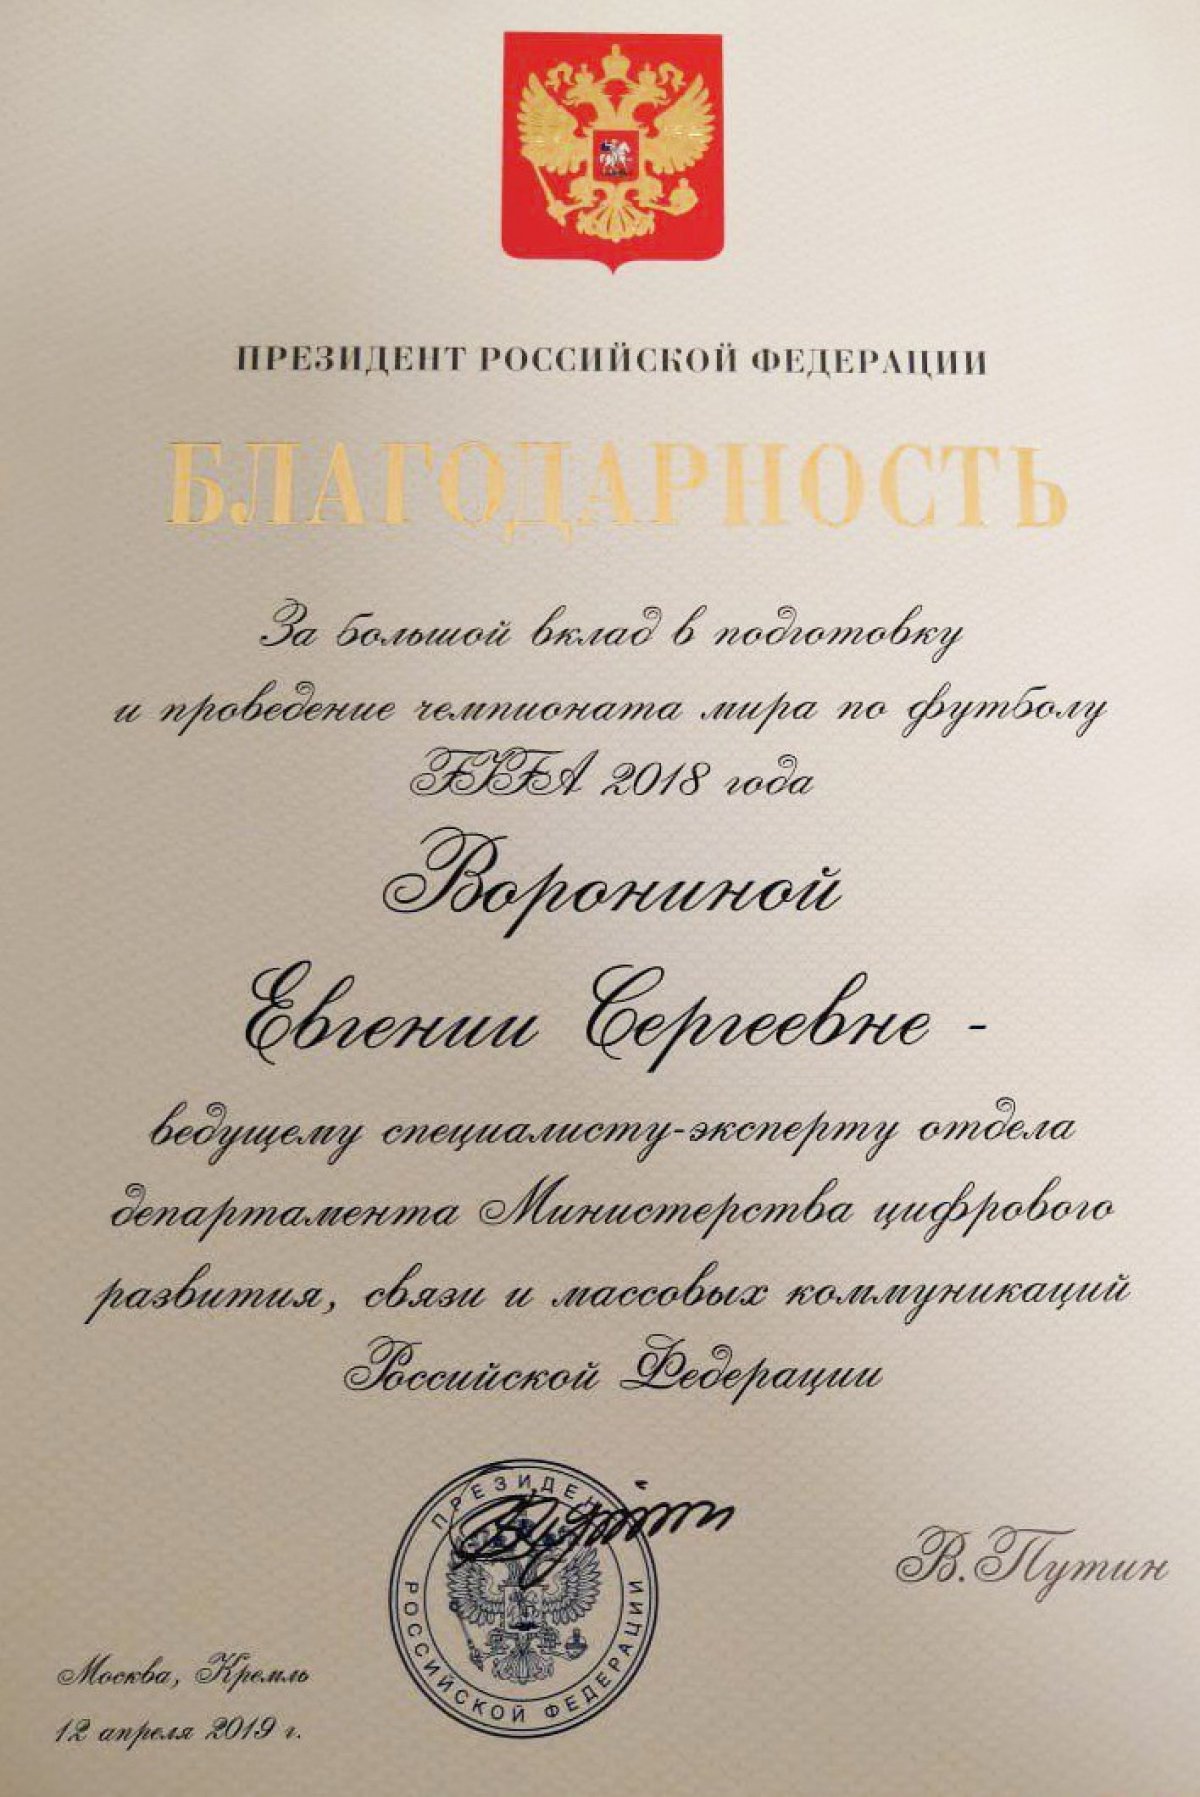 Благодарность от Президента РФ сотруднику ГУУ